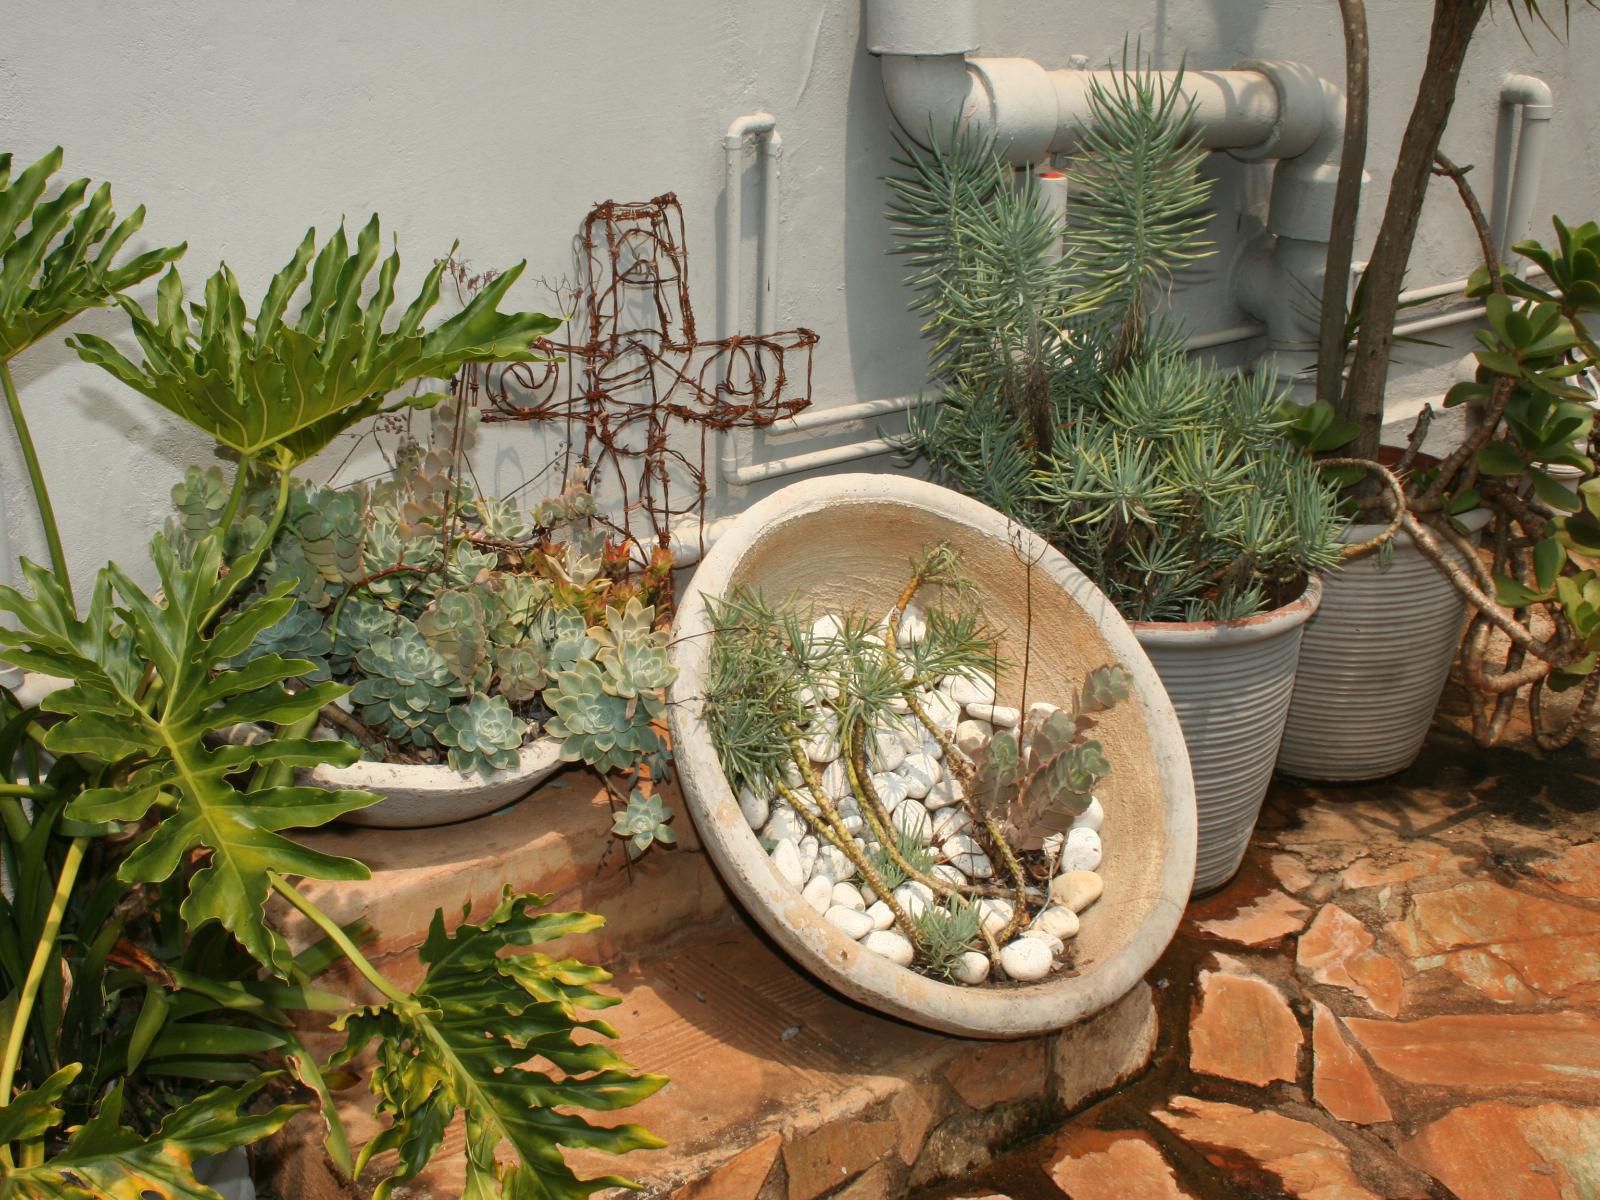 Purdy S Place Makhado Louis Trichardt Limpopo Province South Africa Plant, Nature, Garden